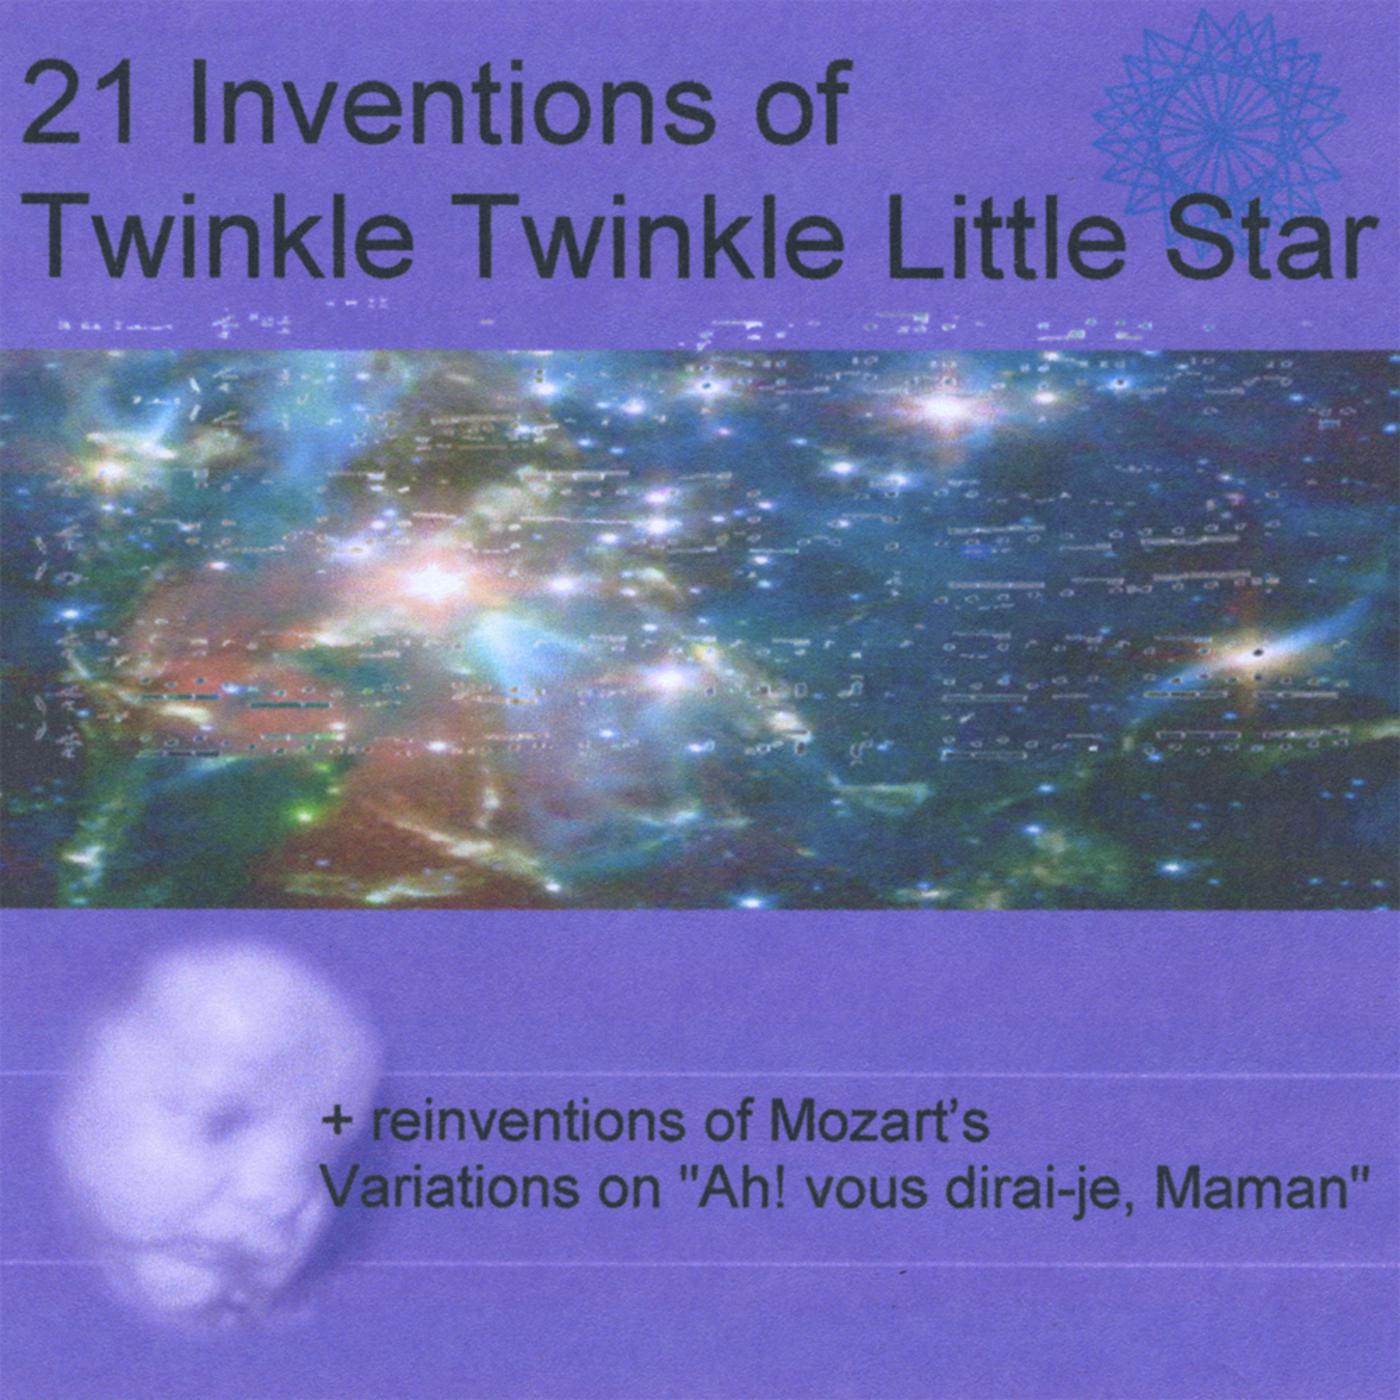 Twinkle Twinkle Little Starfish